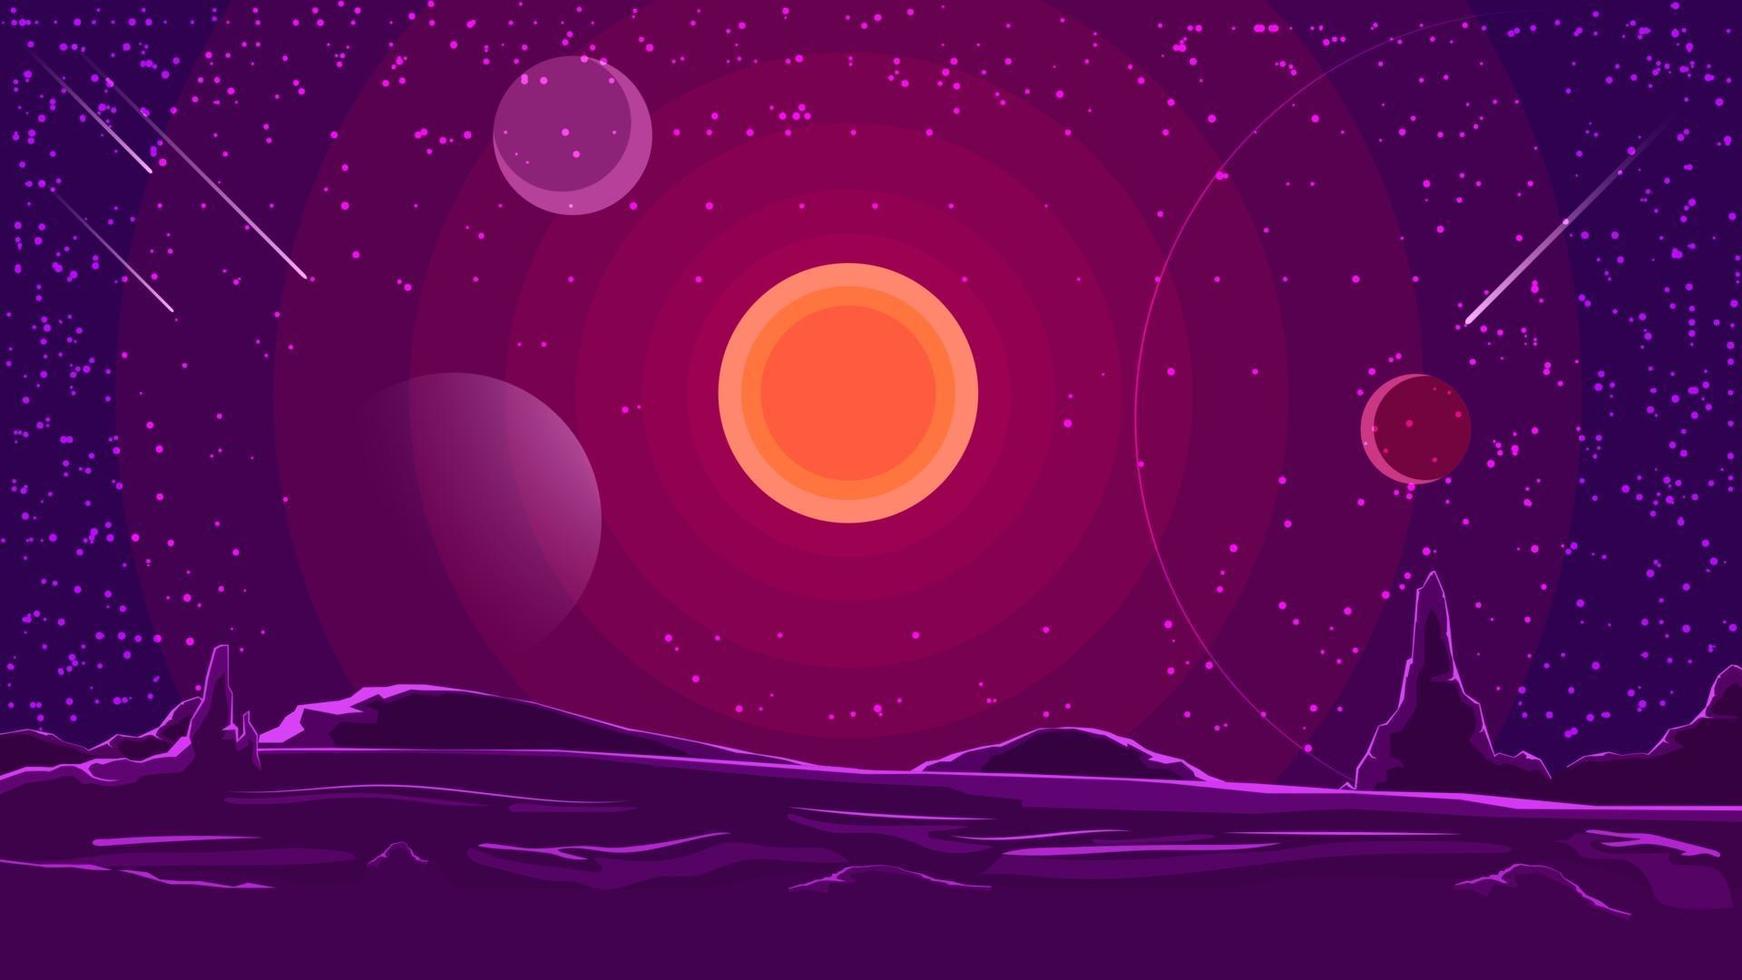 ruimtelandschap met zonsondergang op purpere hemel, aard op een andere planeet. vector illustratie.